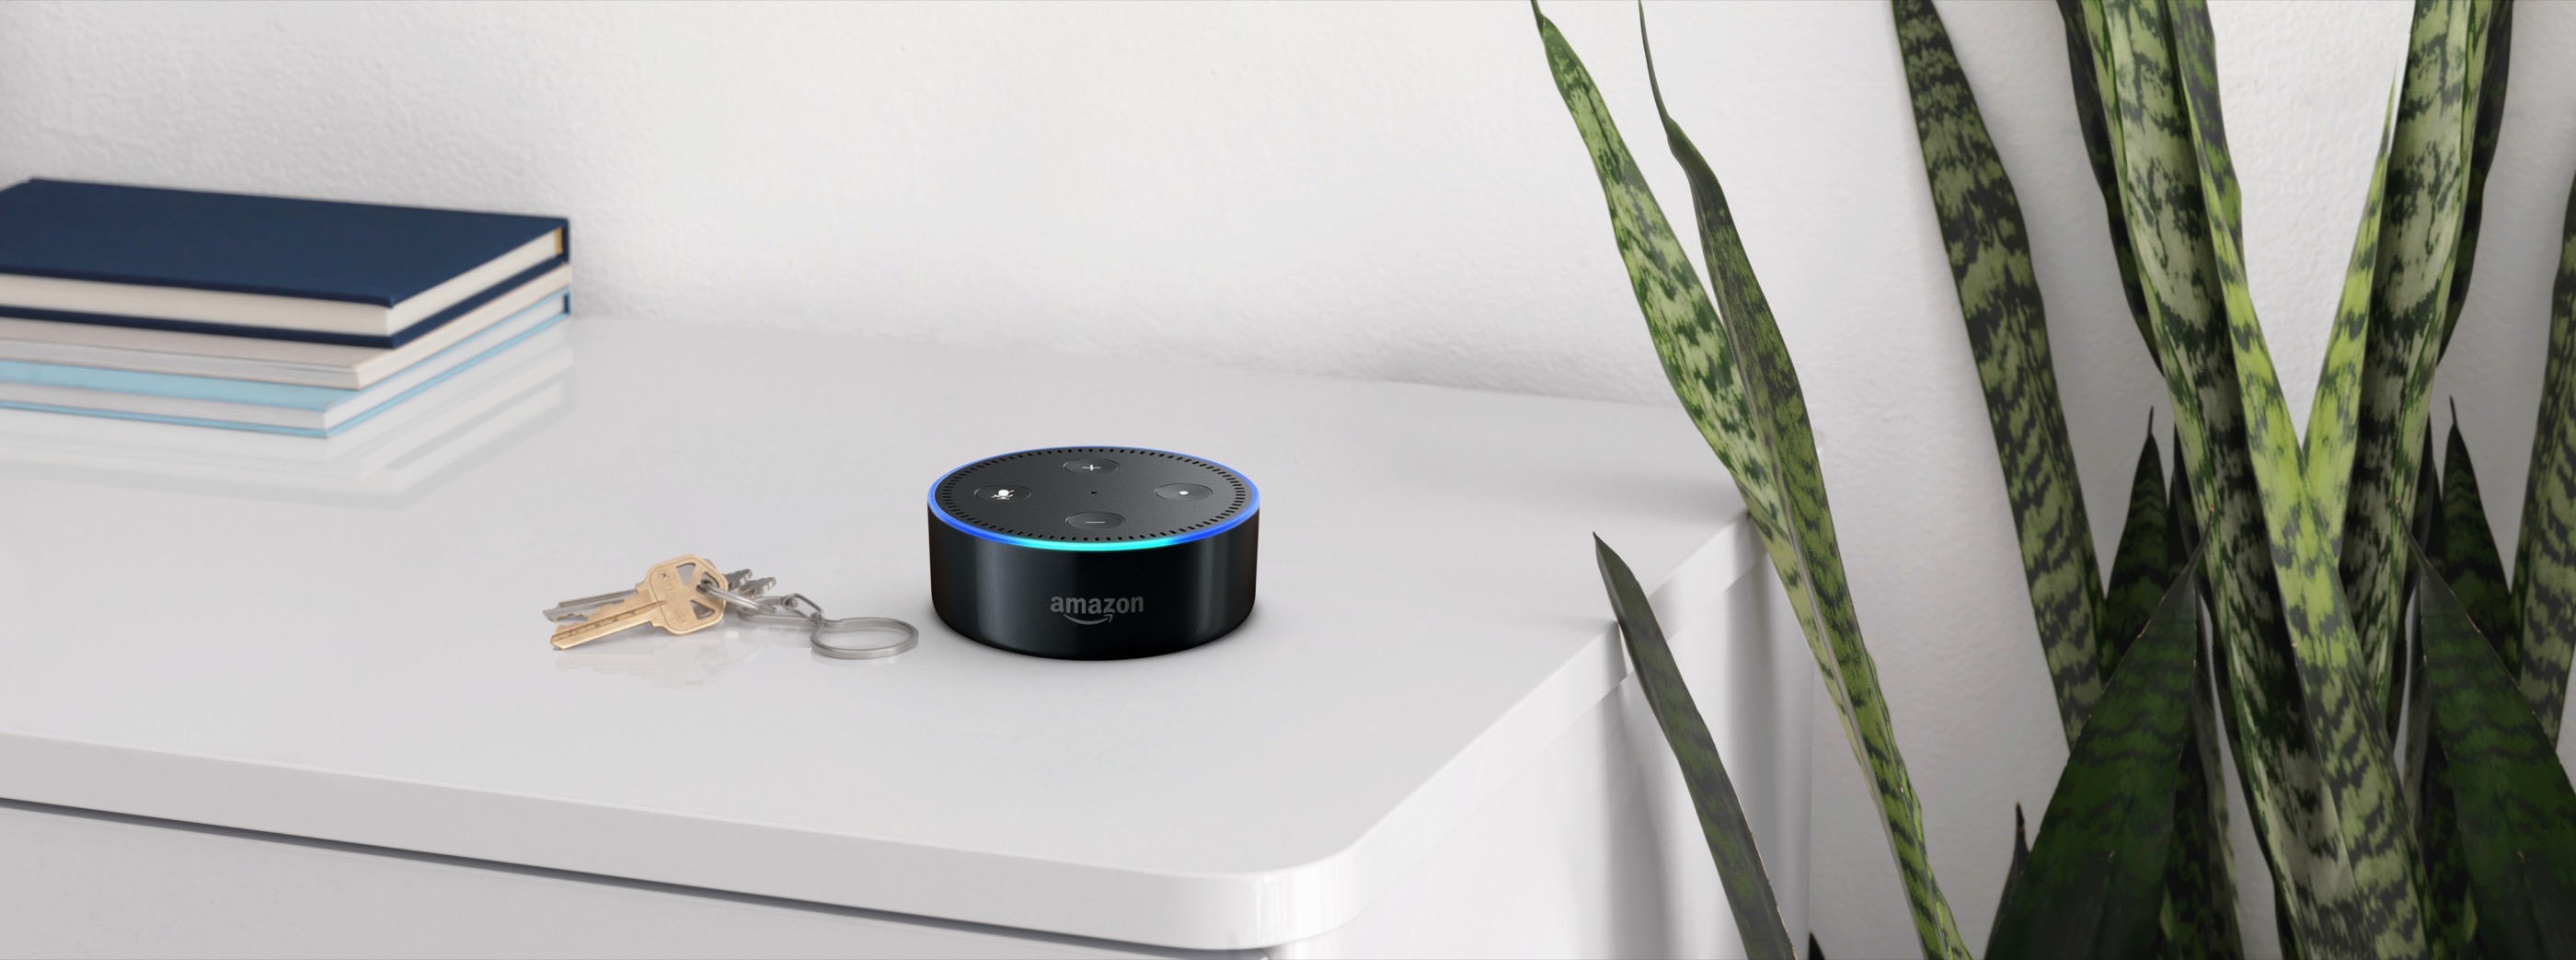 The Amazon Echo Dot smart voice assistant